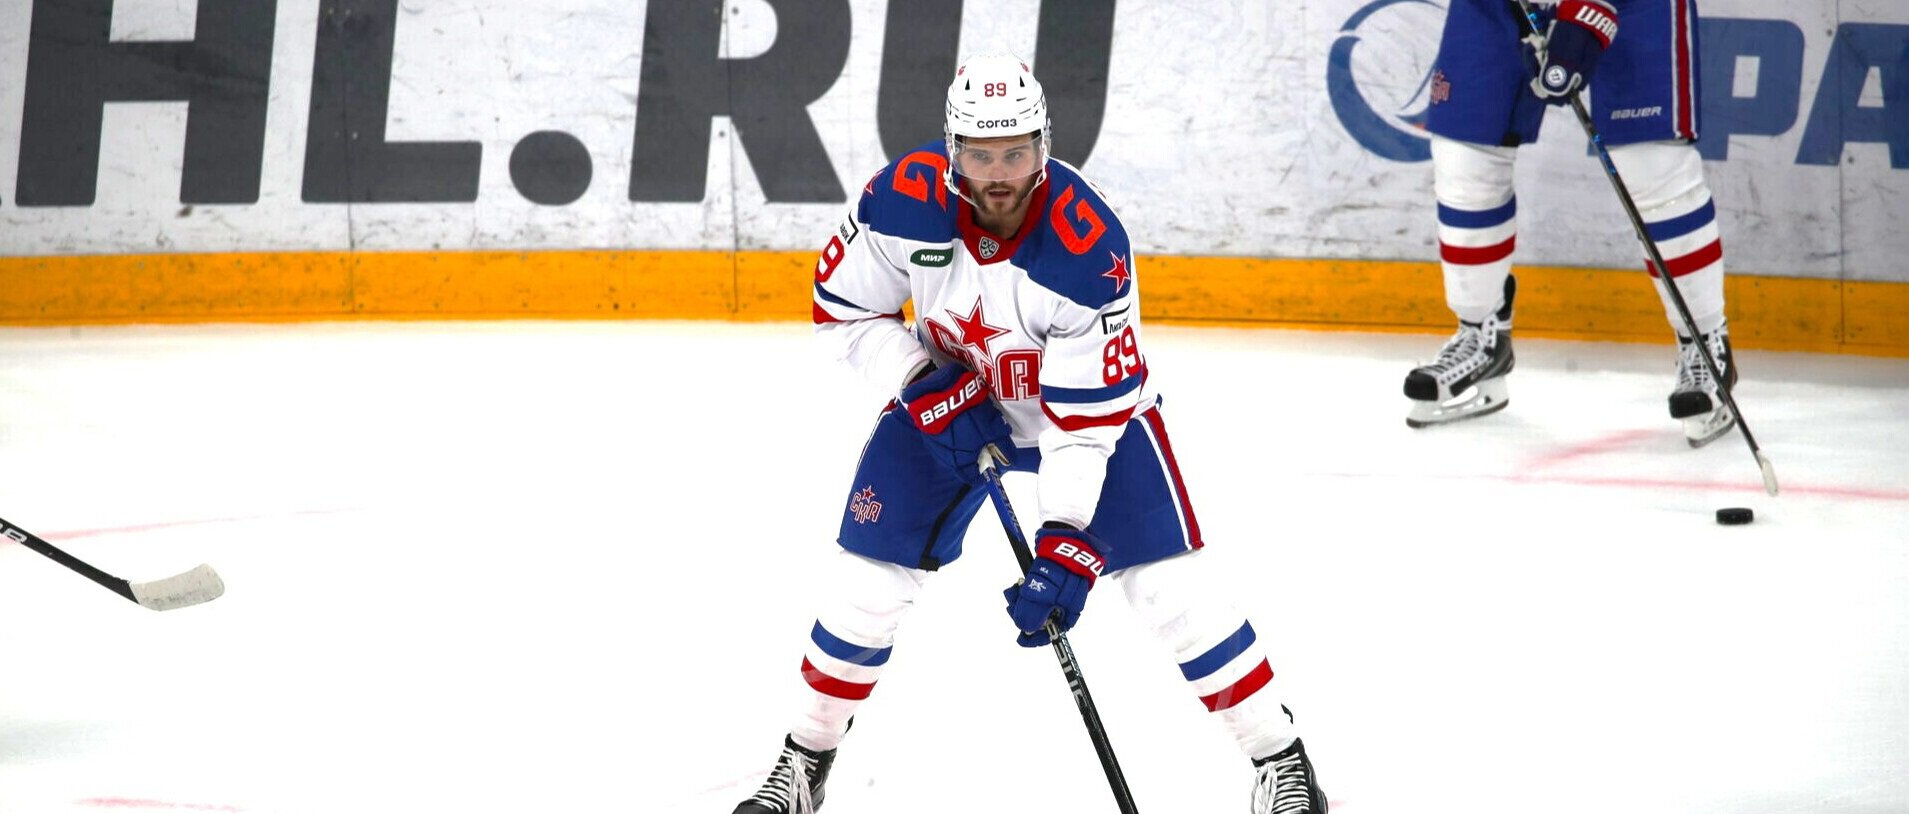 Никита Щитов: Гальченюк играл в НХЛ, а сейчас переходит из СКА в Амур, это шаг назад. Возможно, это часть сделки какой-то, нужно подождать